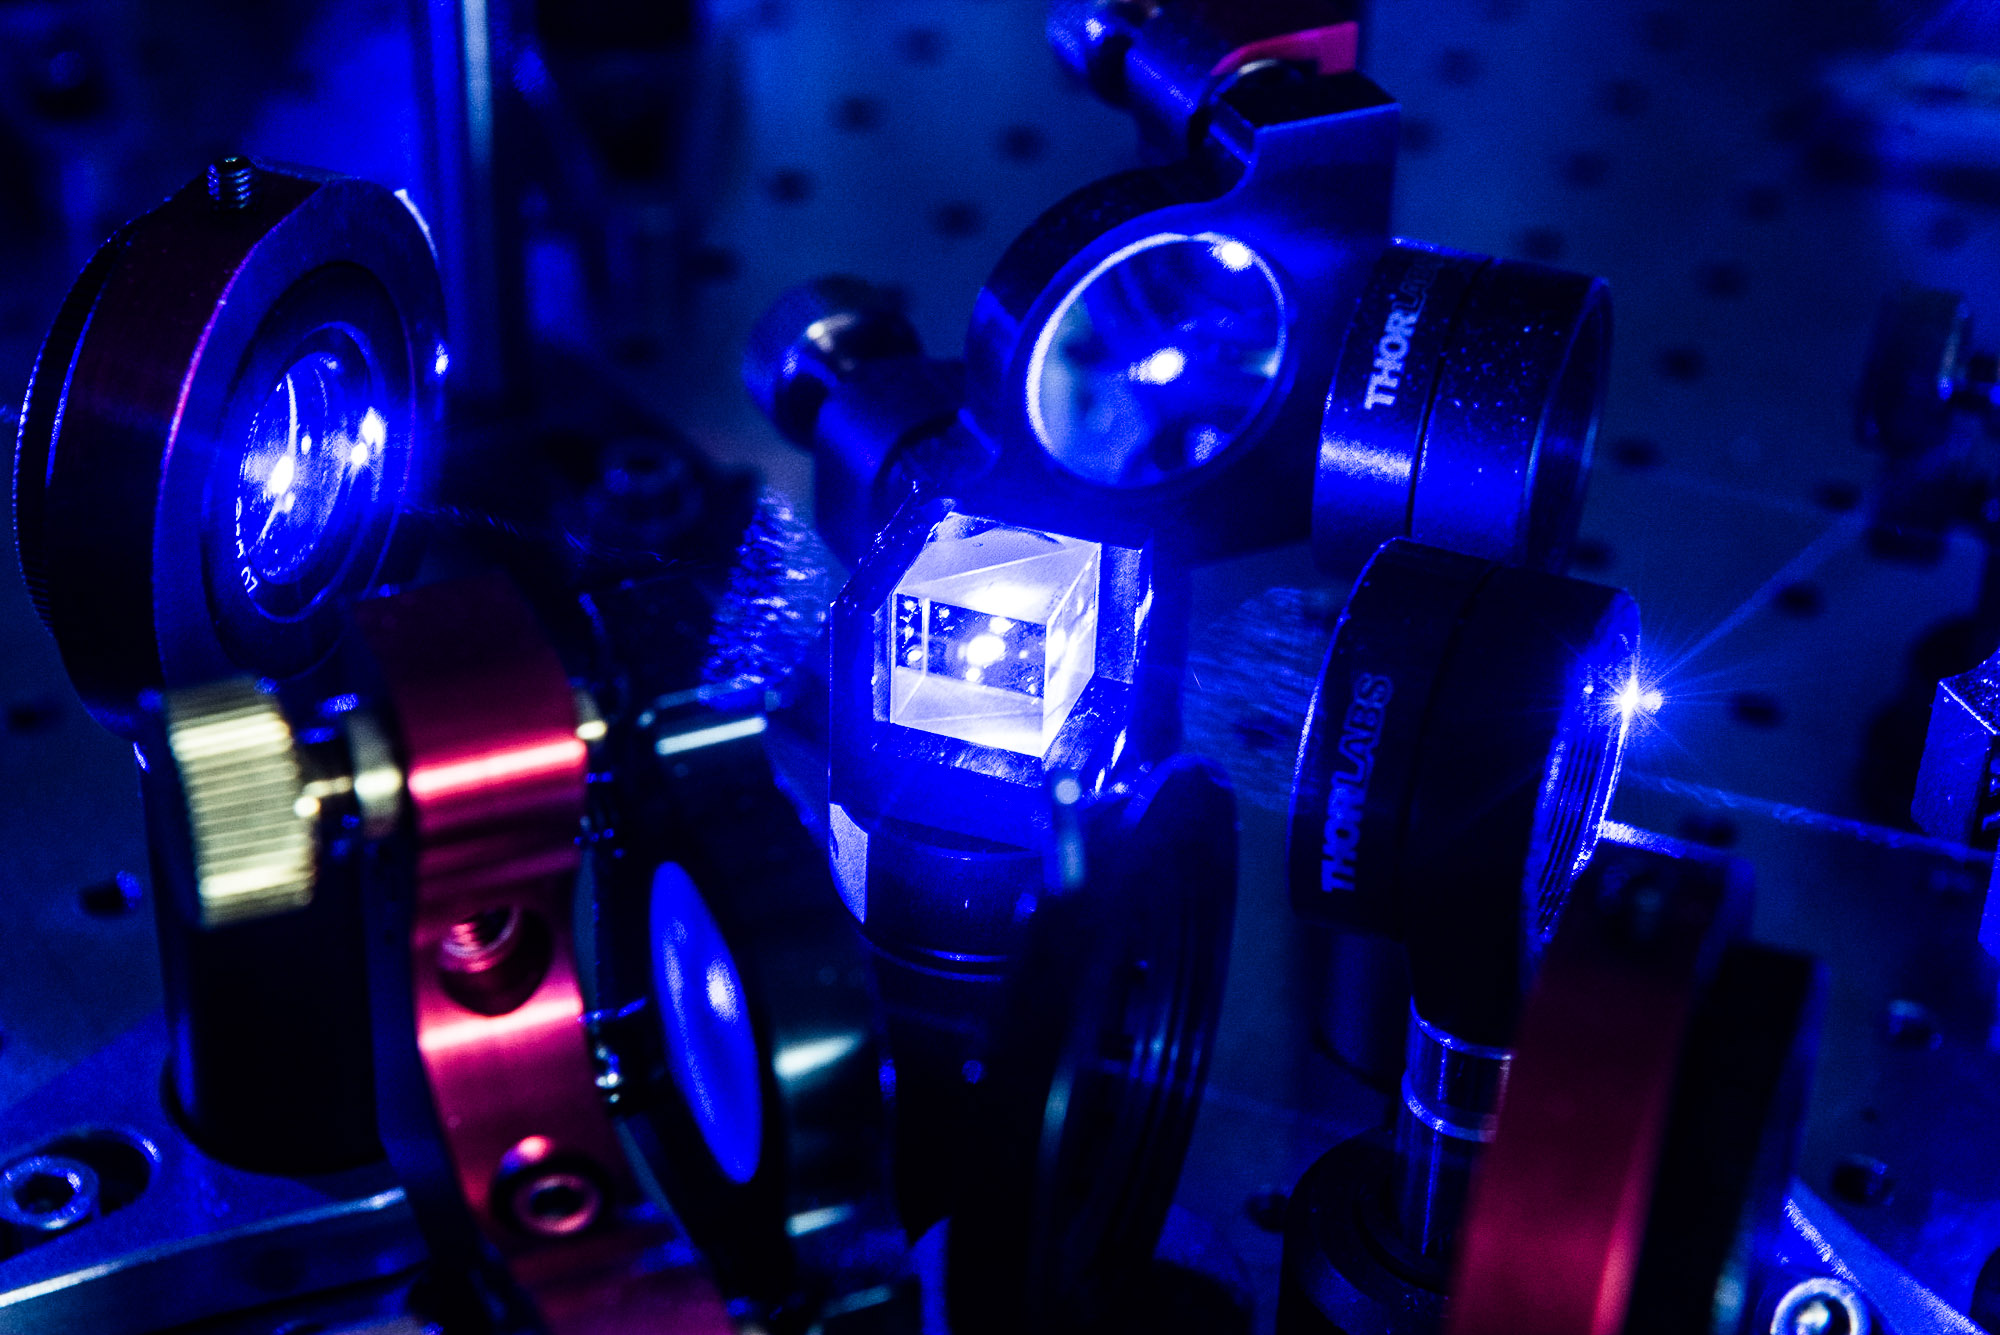 Eléments optiques utilisés pour séparer et mettre en forme des faisceaux lasers qui vont permettre de refroidir et d’observer des atomes de dysprosium. Les chercheurs étudient l'influence des interactions entre moments magnétiques du Dysprosium sur la condensation de Bose-Einstein et la superfluidité. Ils s'intéressent également à la génération de champs de jauge artificiels dans ces gaz atomiques, en vue de créer une phase superfluide topologique. Ils s'attendent à trouver dans ce système des particules exotiques, les fermions de Majorana.